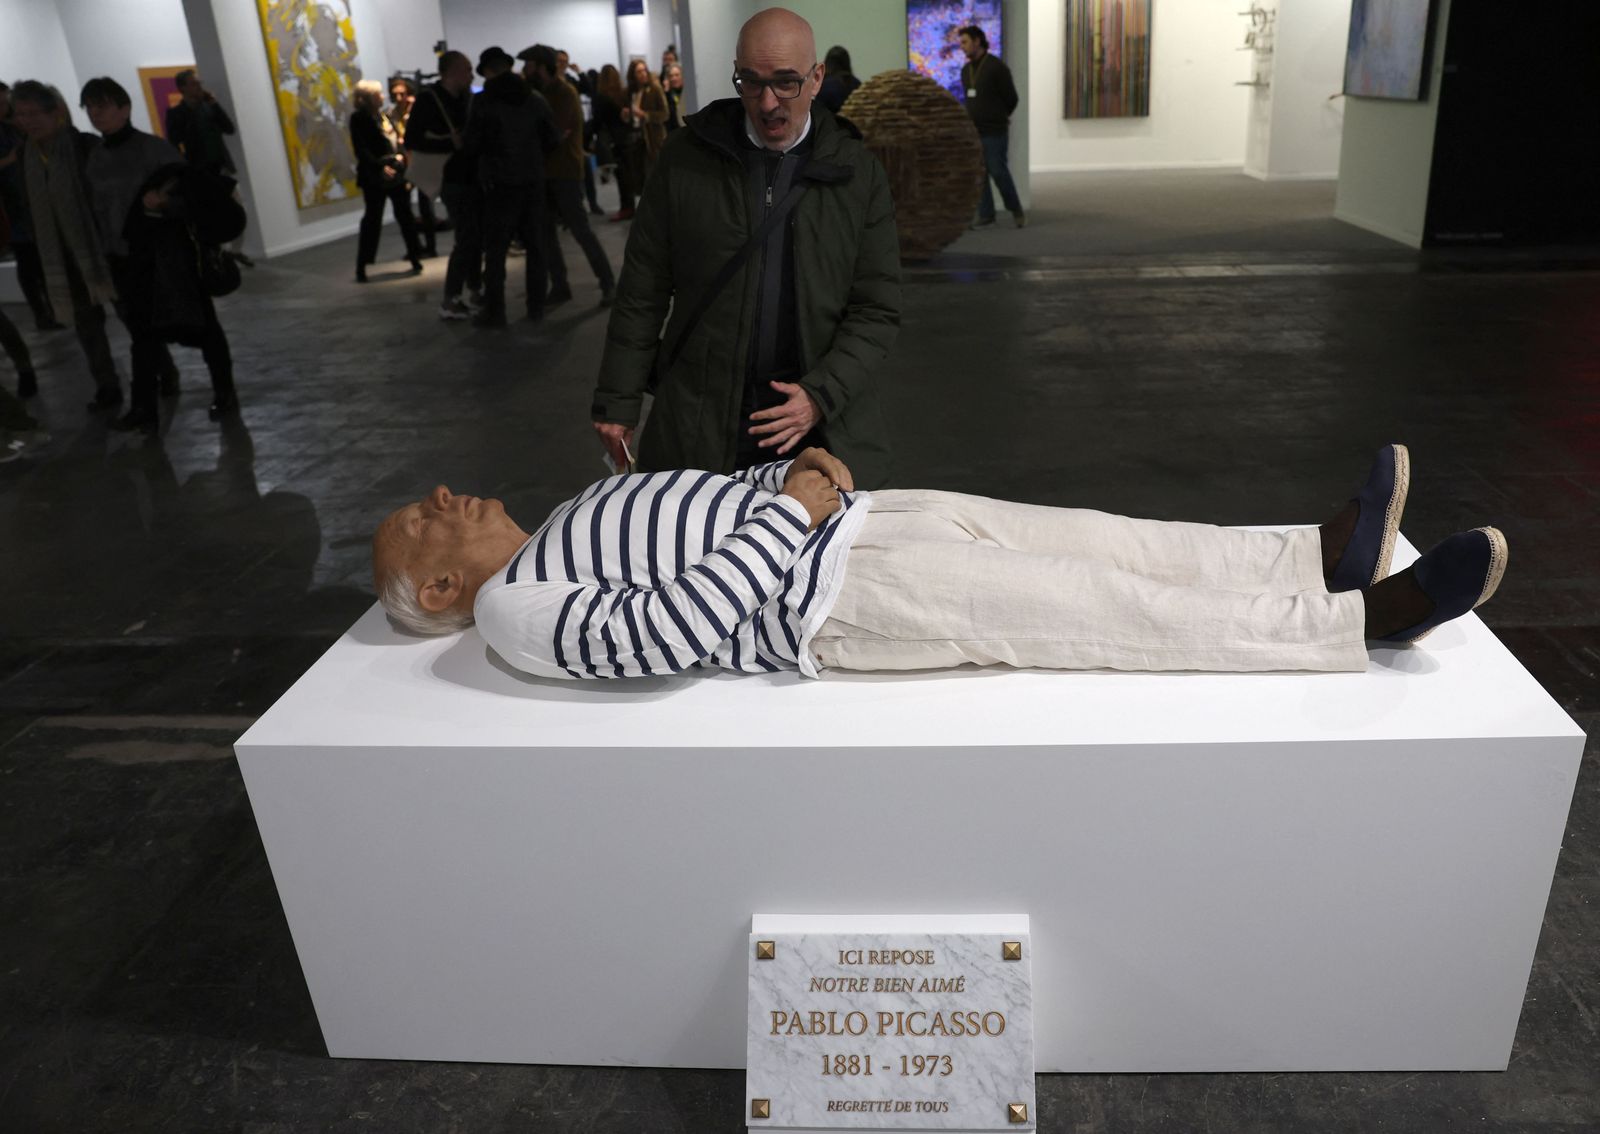 زائر ينظر إلى تمثال يمثل الفنان الإسباني بابلو بيكاسو في جناح معرض فني في مدريد. 23 فبراير 2023 - AFP